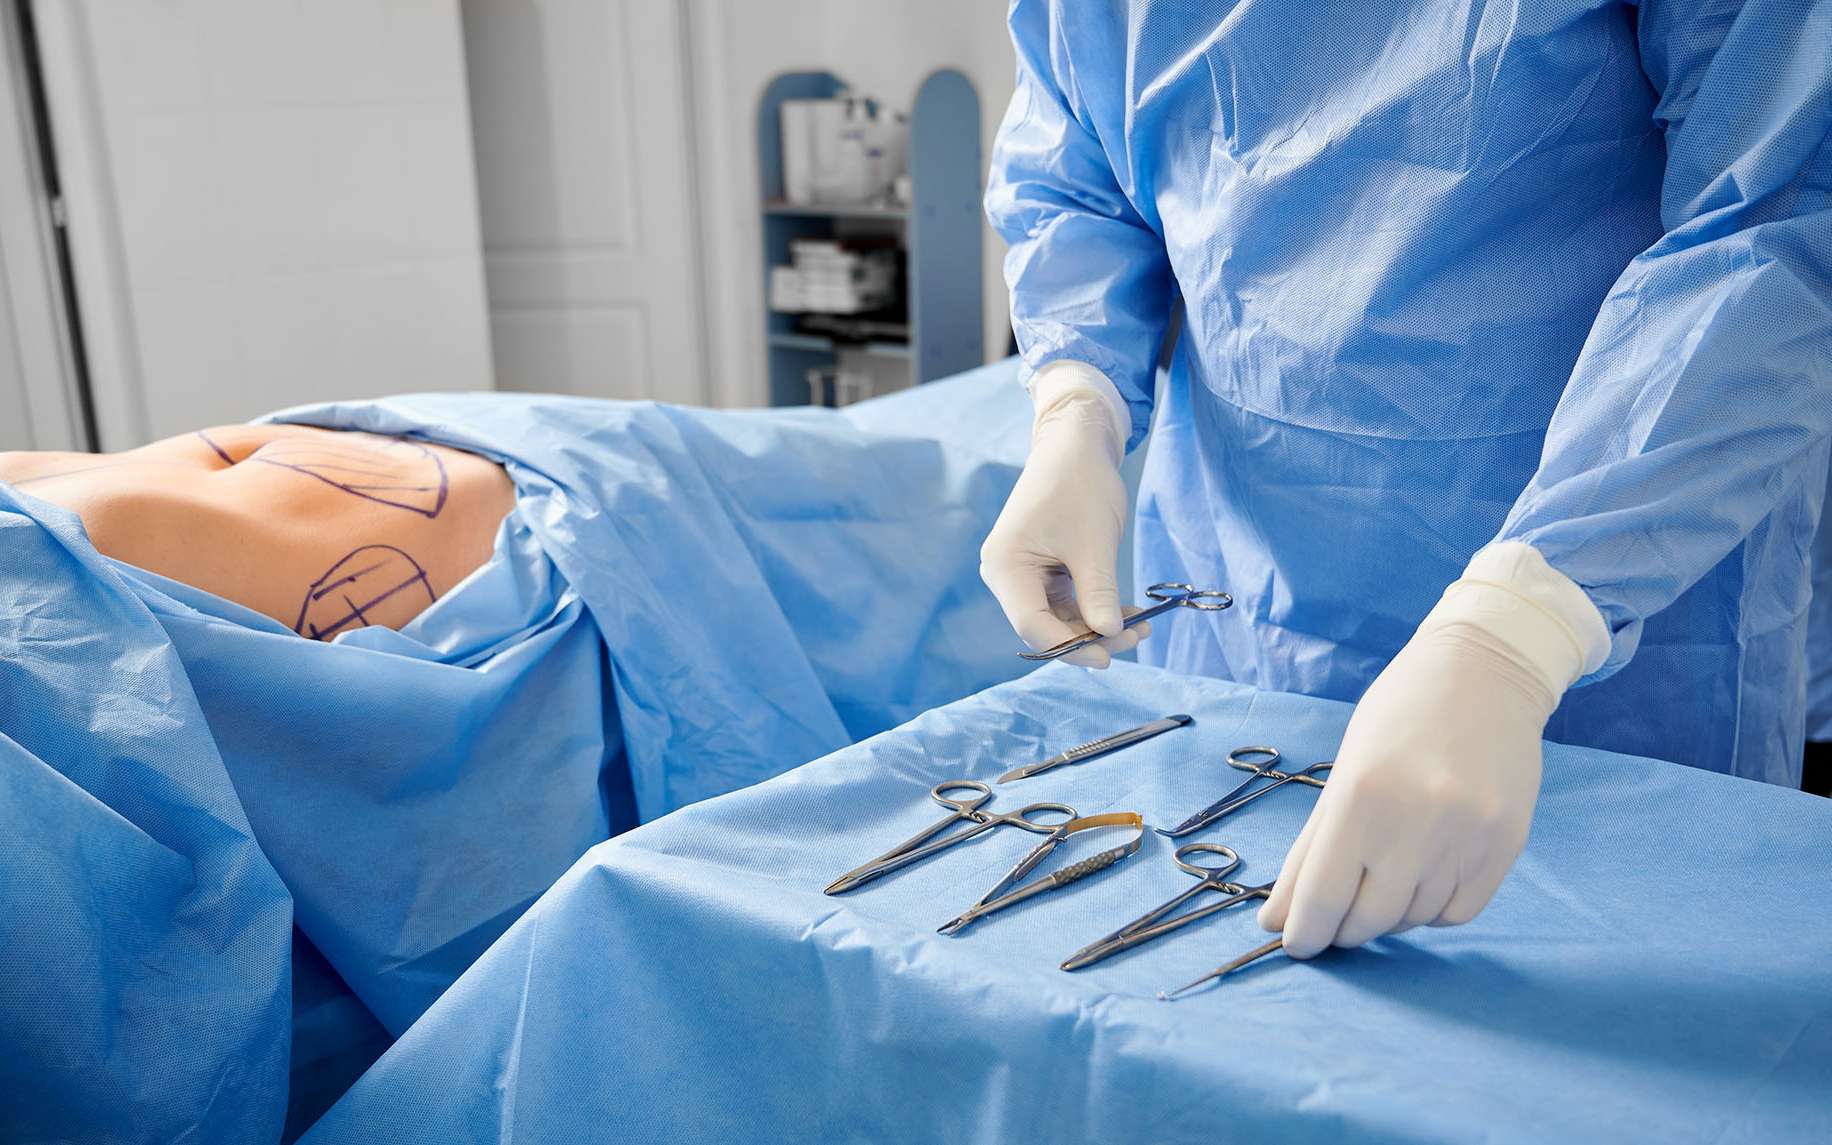 Chirurgien en gants stériles préparant des instruments médicaux, prêt à intervenir sur un patient. © Anatoliy_gleb, Adobe Stock